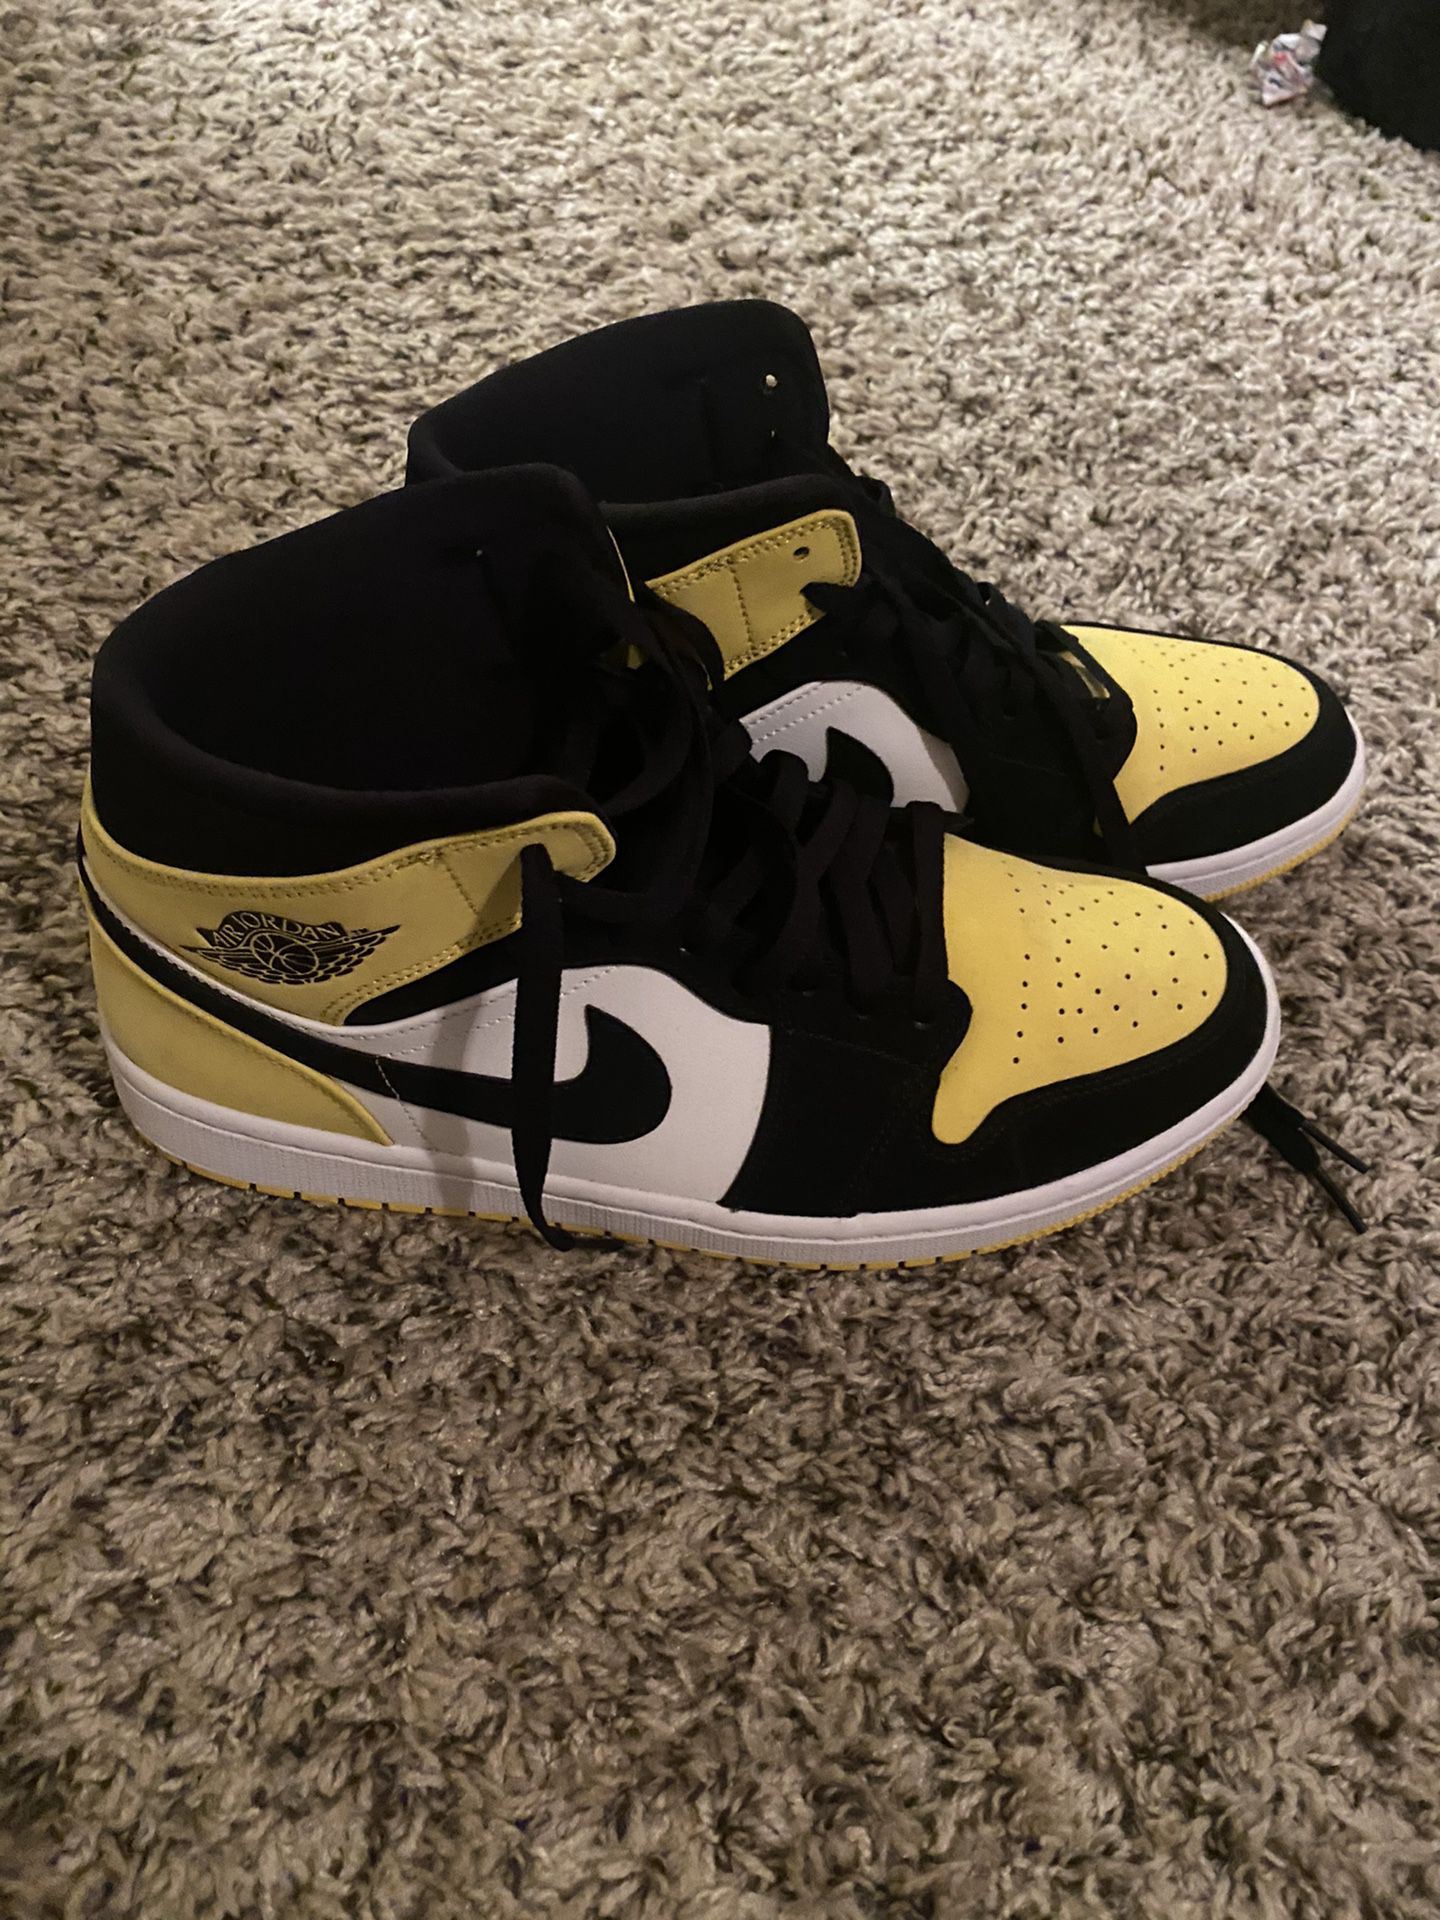 Nike Air Jordan 1s Yellow Toe 10.5